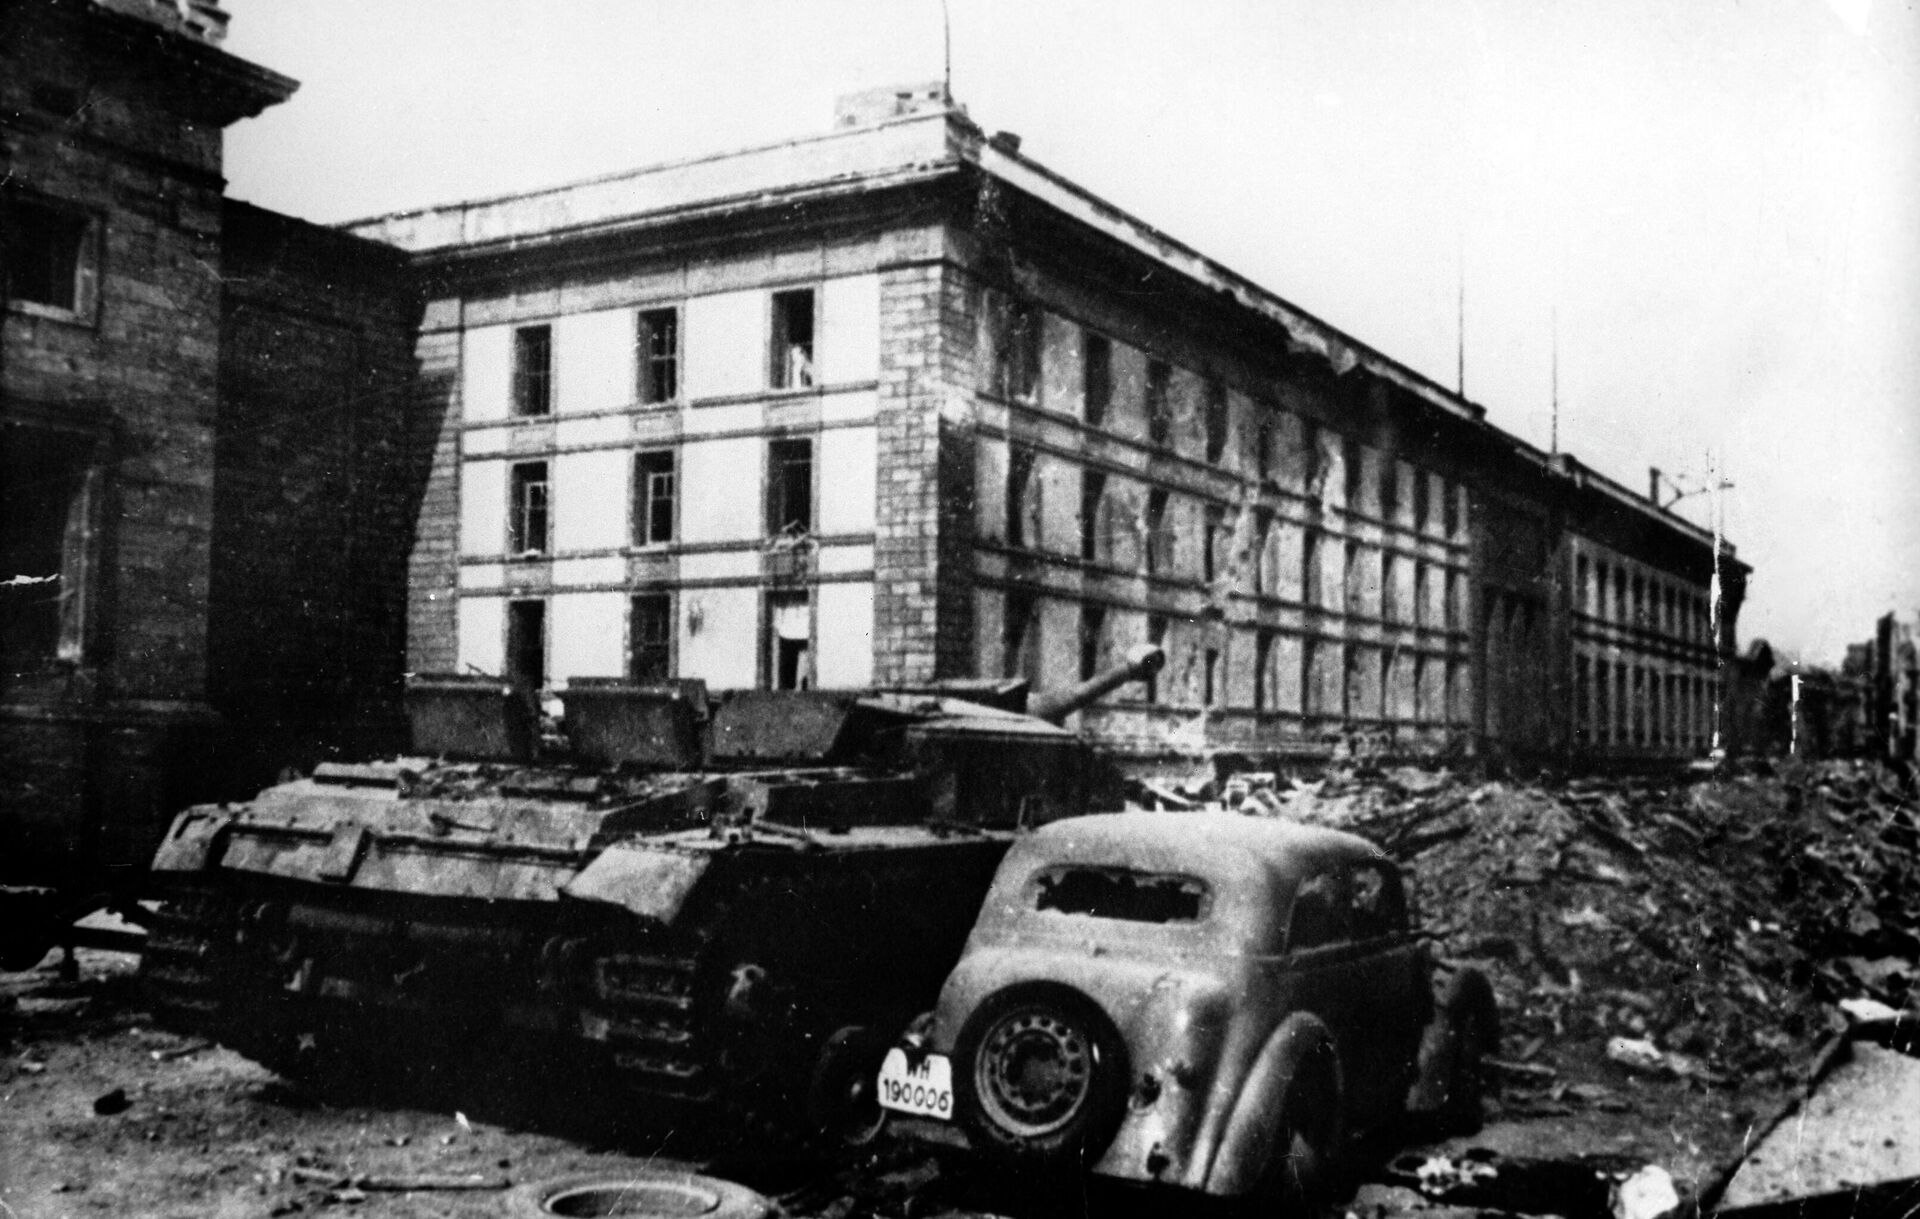 Здание имперской канцелярии в Берлине, под которым находился бункер Гитлера, сохранилось только на архивных снимках. Оно снесено как символ преступлений фашизма. - Sputnik Узбекистан, 1920, 07.05.2021